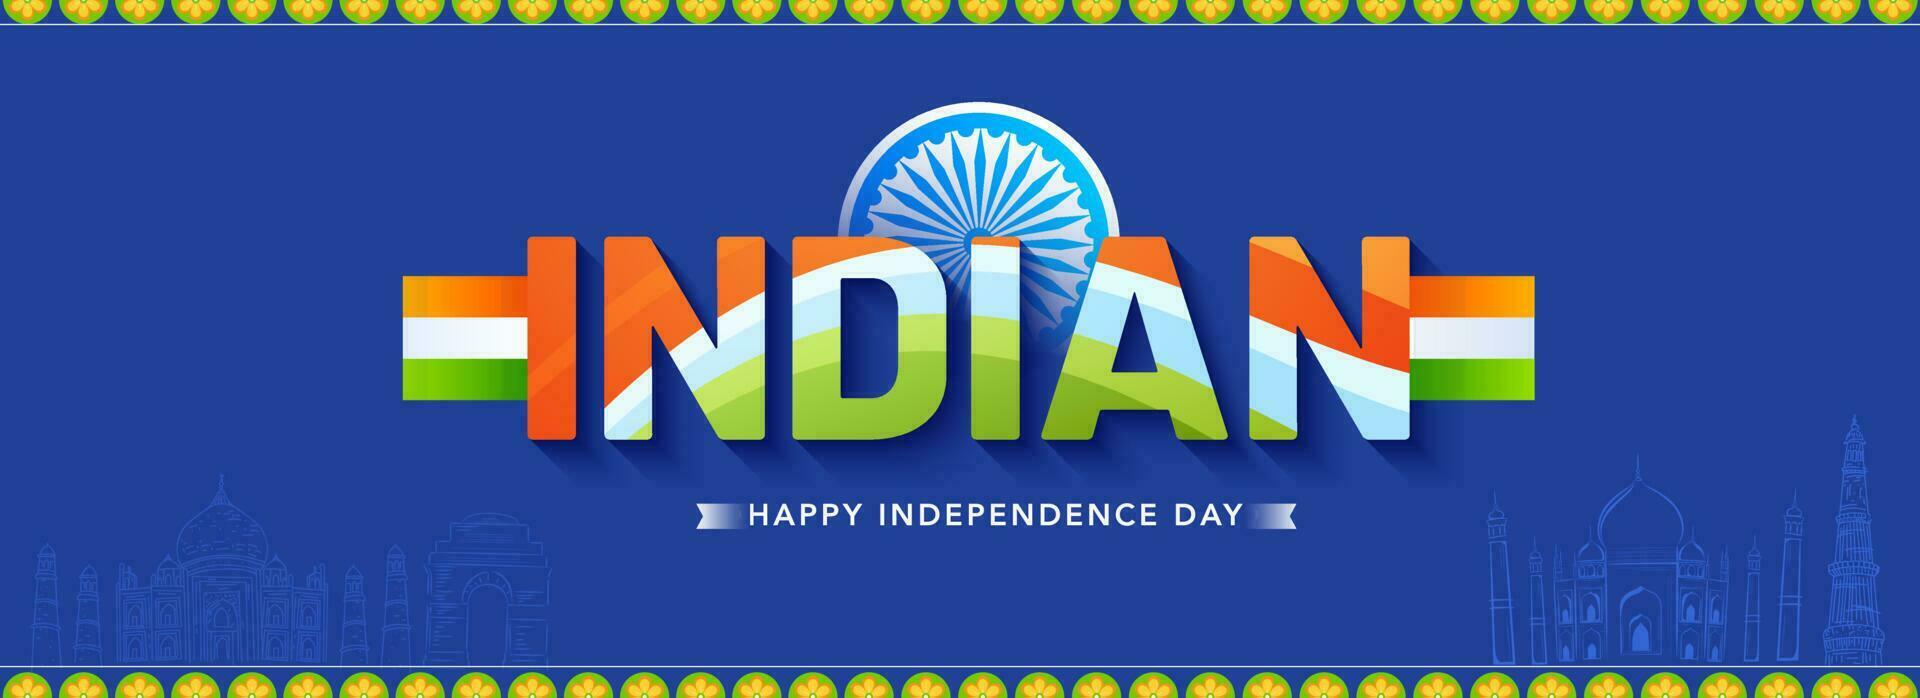 tricolor indiano texto com ashoka roda em azul famoso monumento fundo para feliz independência dia conceito. vetor